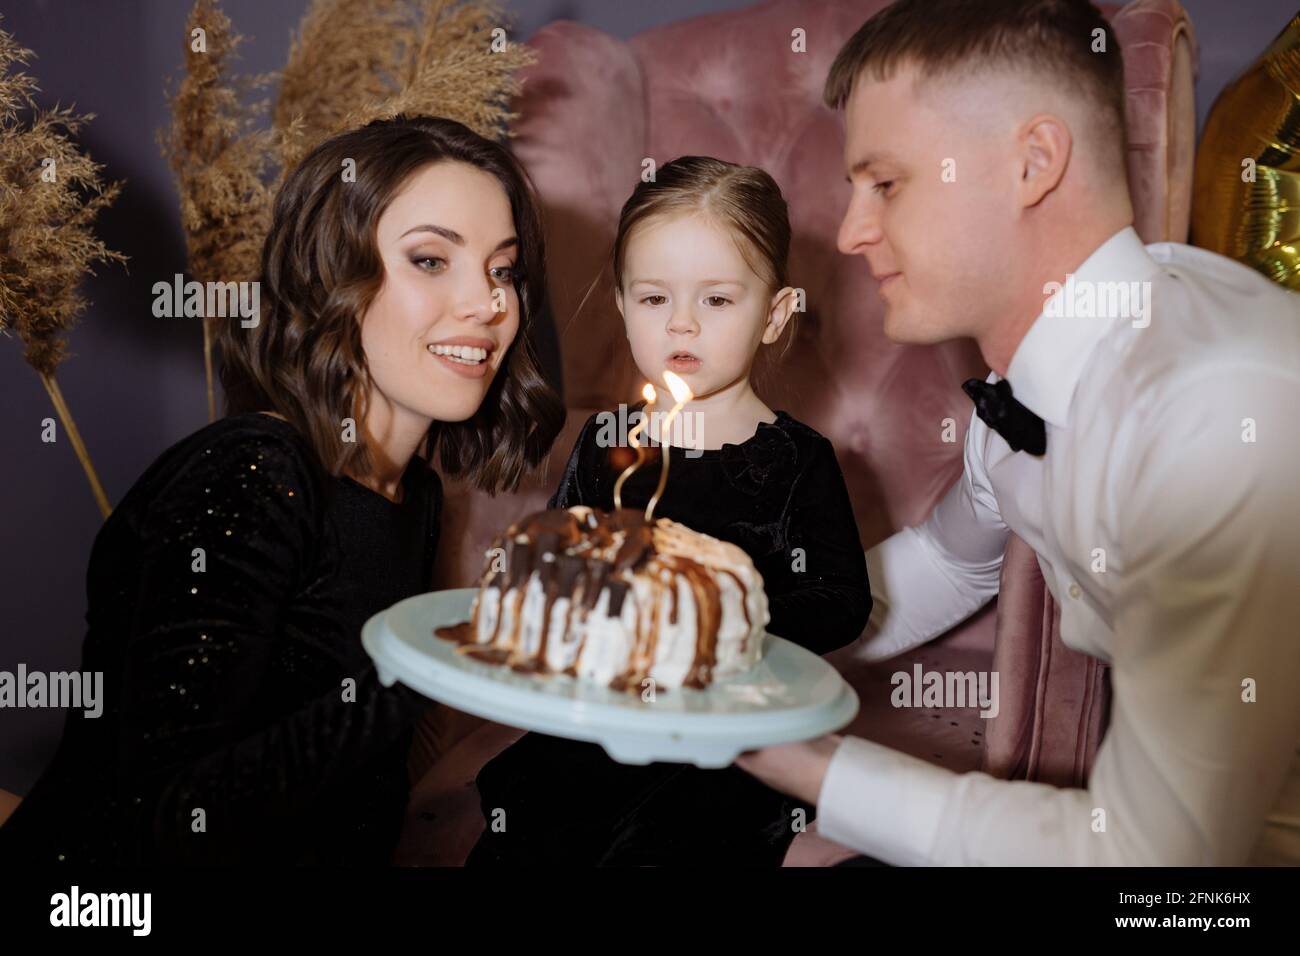 La bambina soffia fuori le candele sulla torta con i suoi genitori Foto Stock